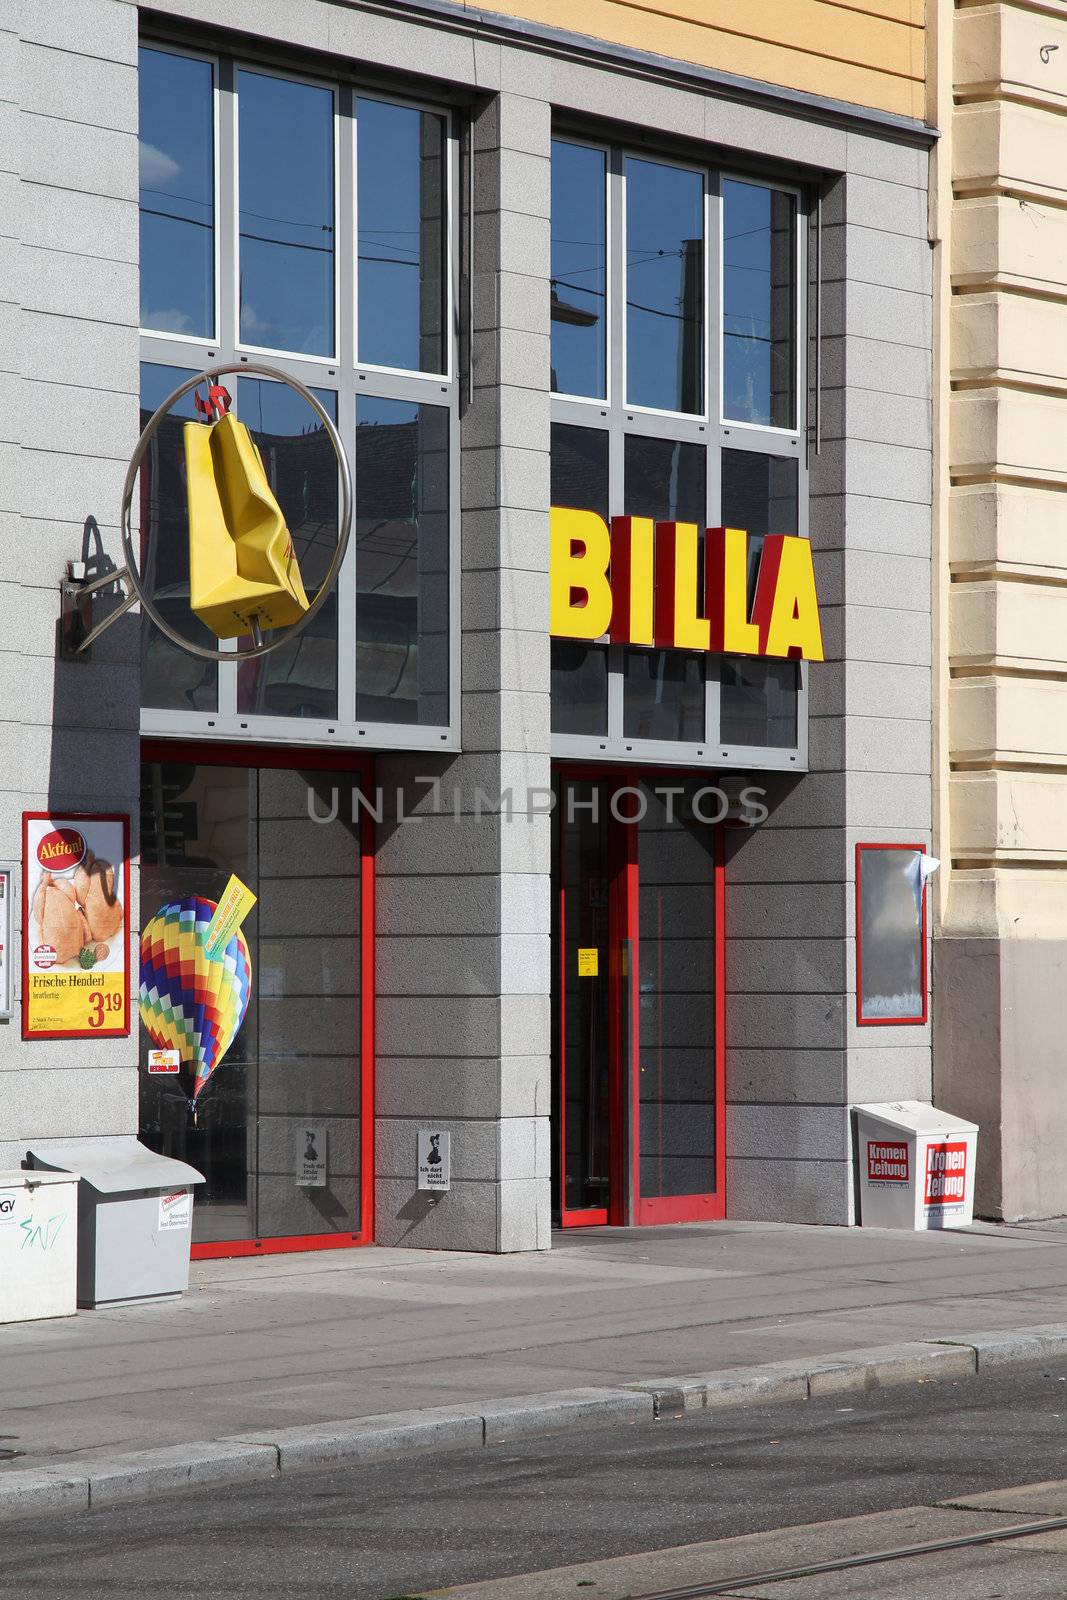 Billa store by tupungato